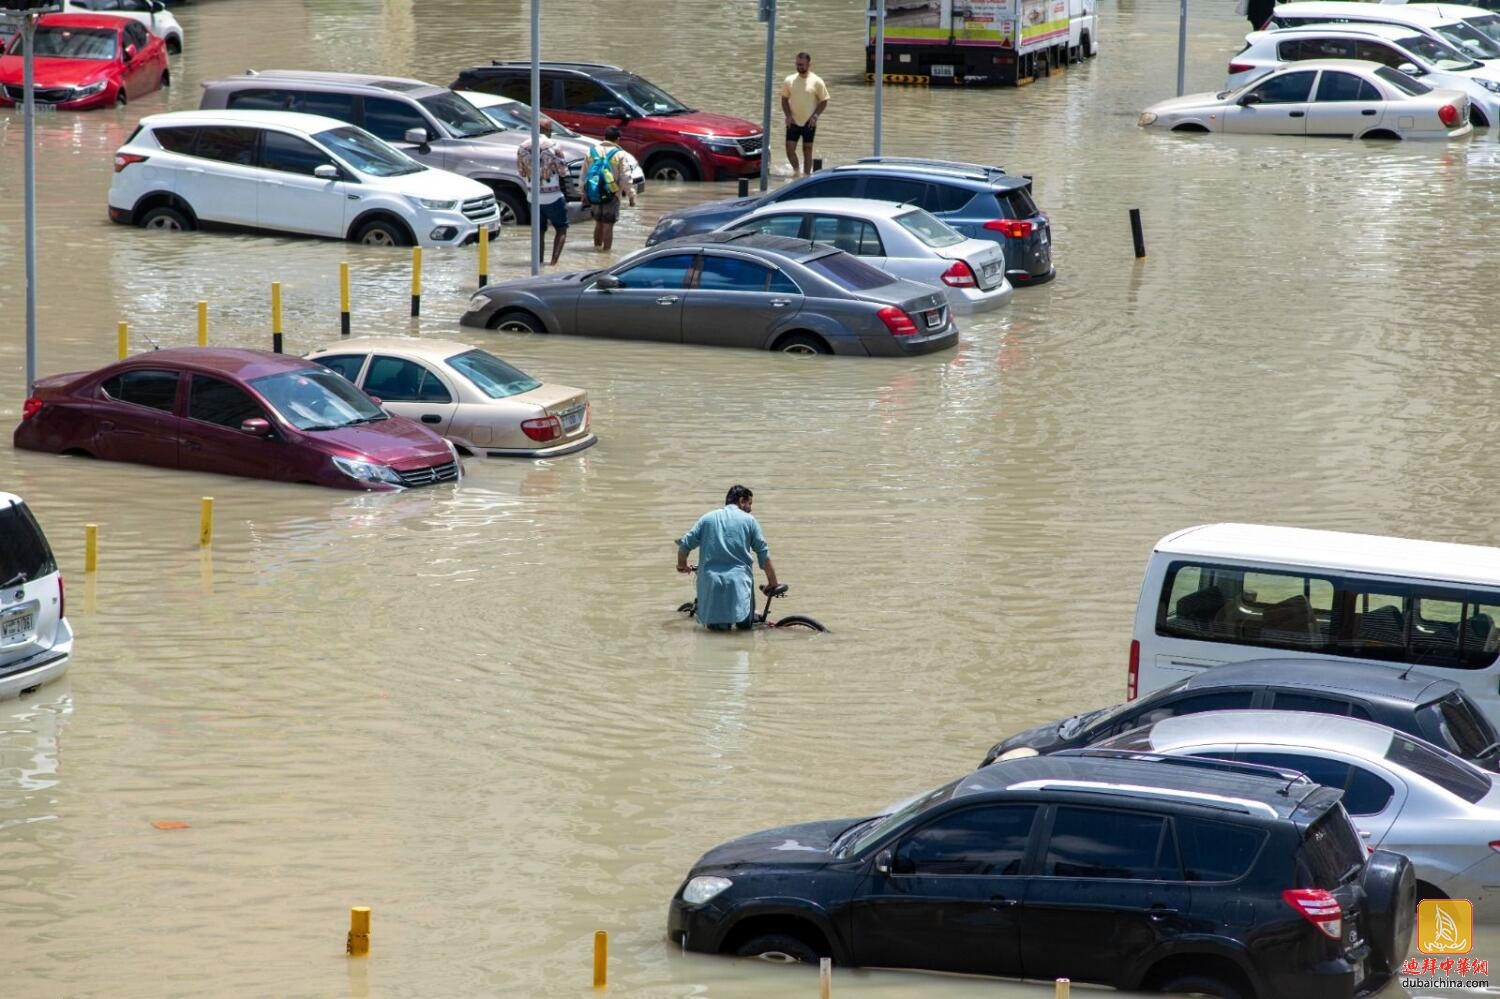 迪拜遭暴雨侵袭 当地中国公民述经历